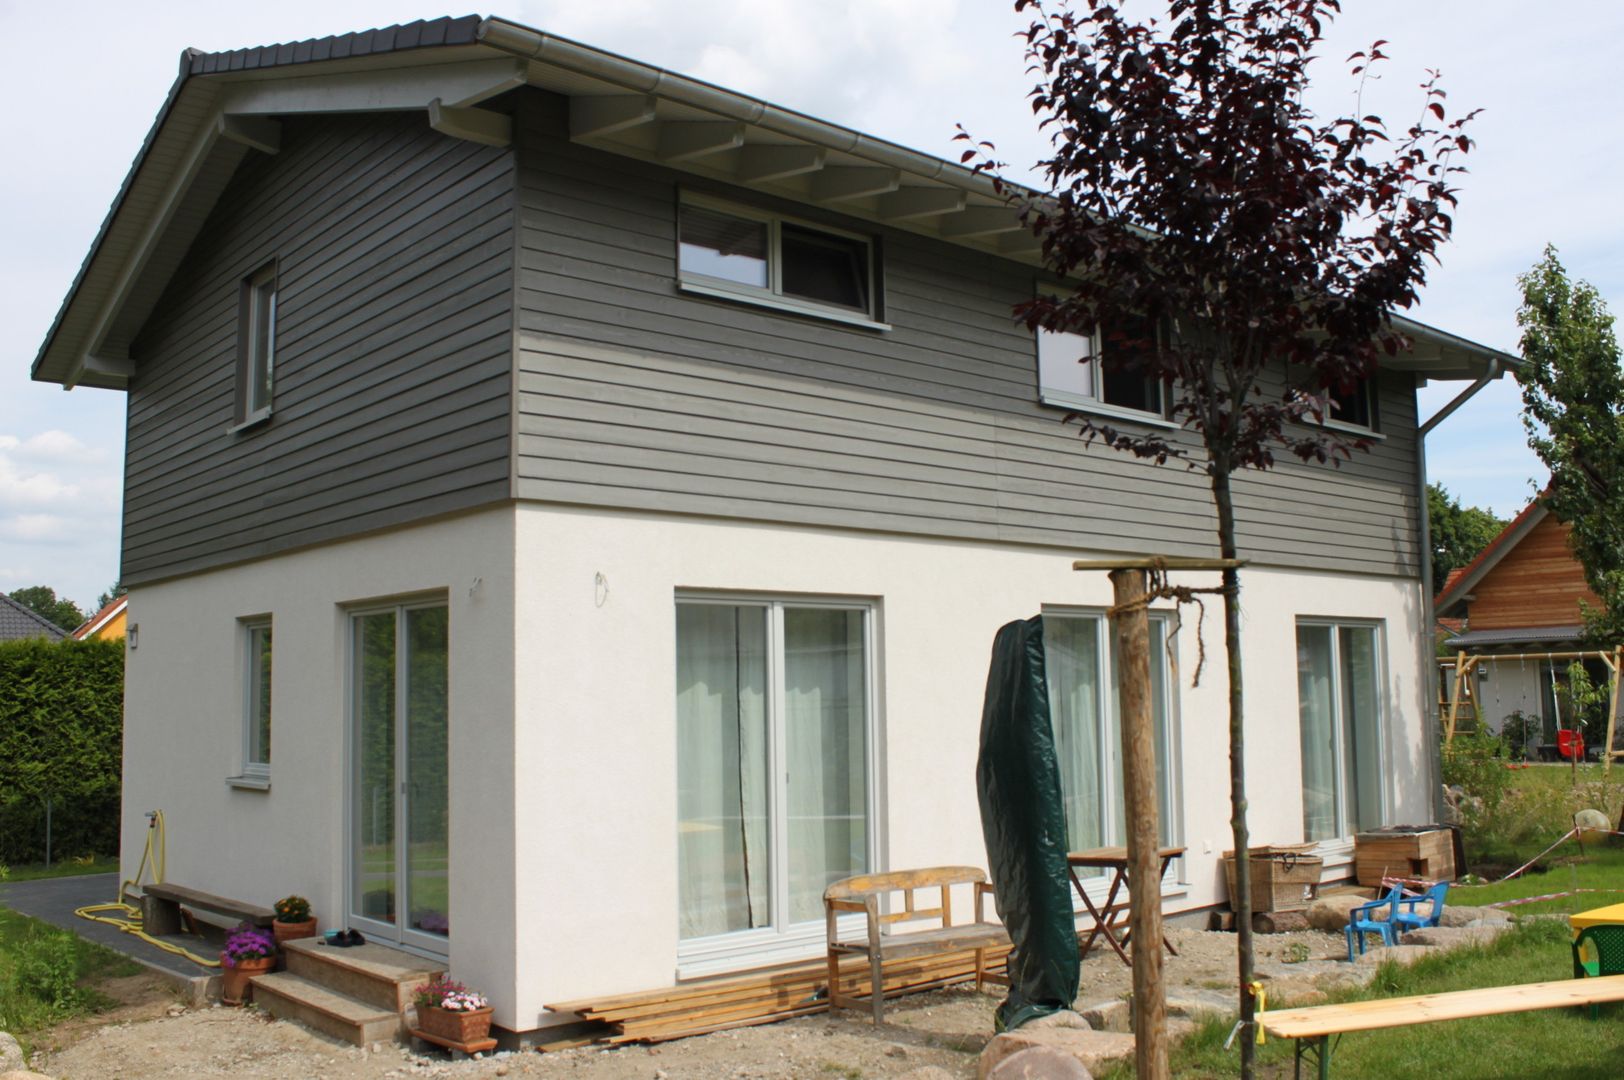 Wohngesundes Holzhaus - modern und kostengünstig, Neues Gesundes Bauen Neues Gesundes Bauen Casas modernas